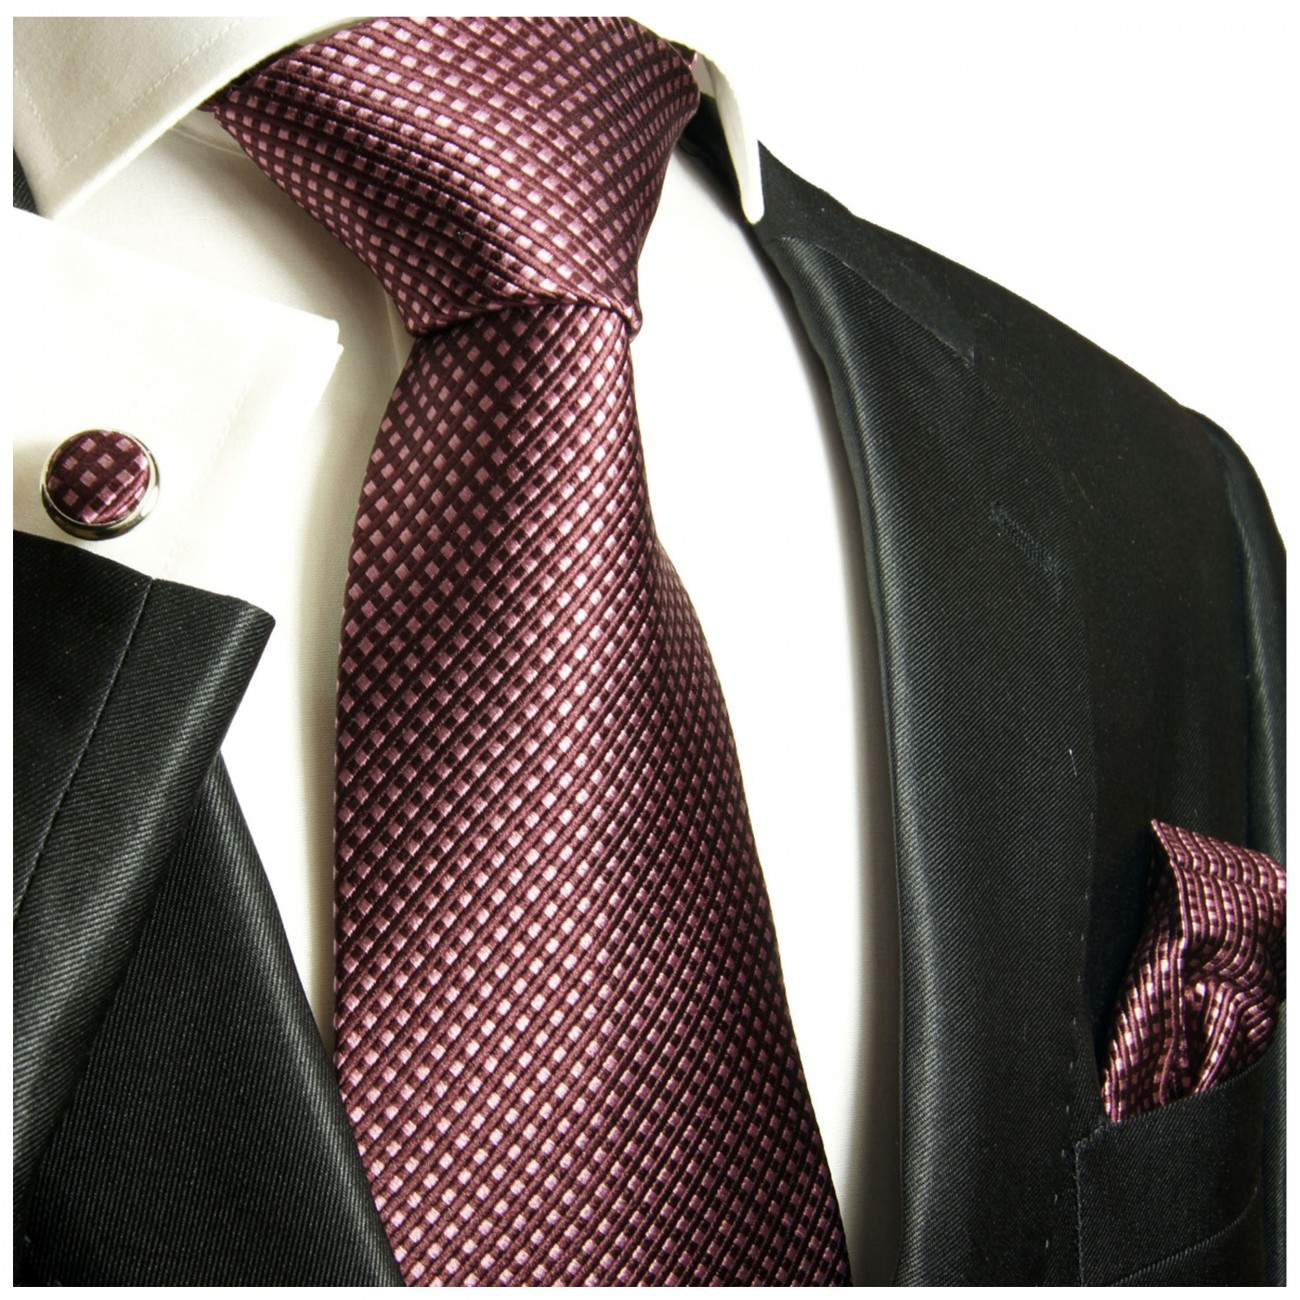 Krawatte Malve mauve pink gepunktet Seide mit Einstecktuch und Manschettenknöpfe